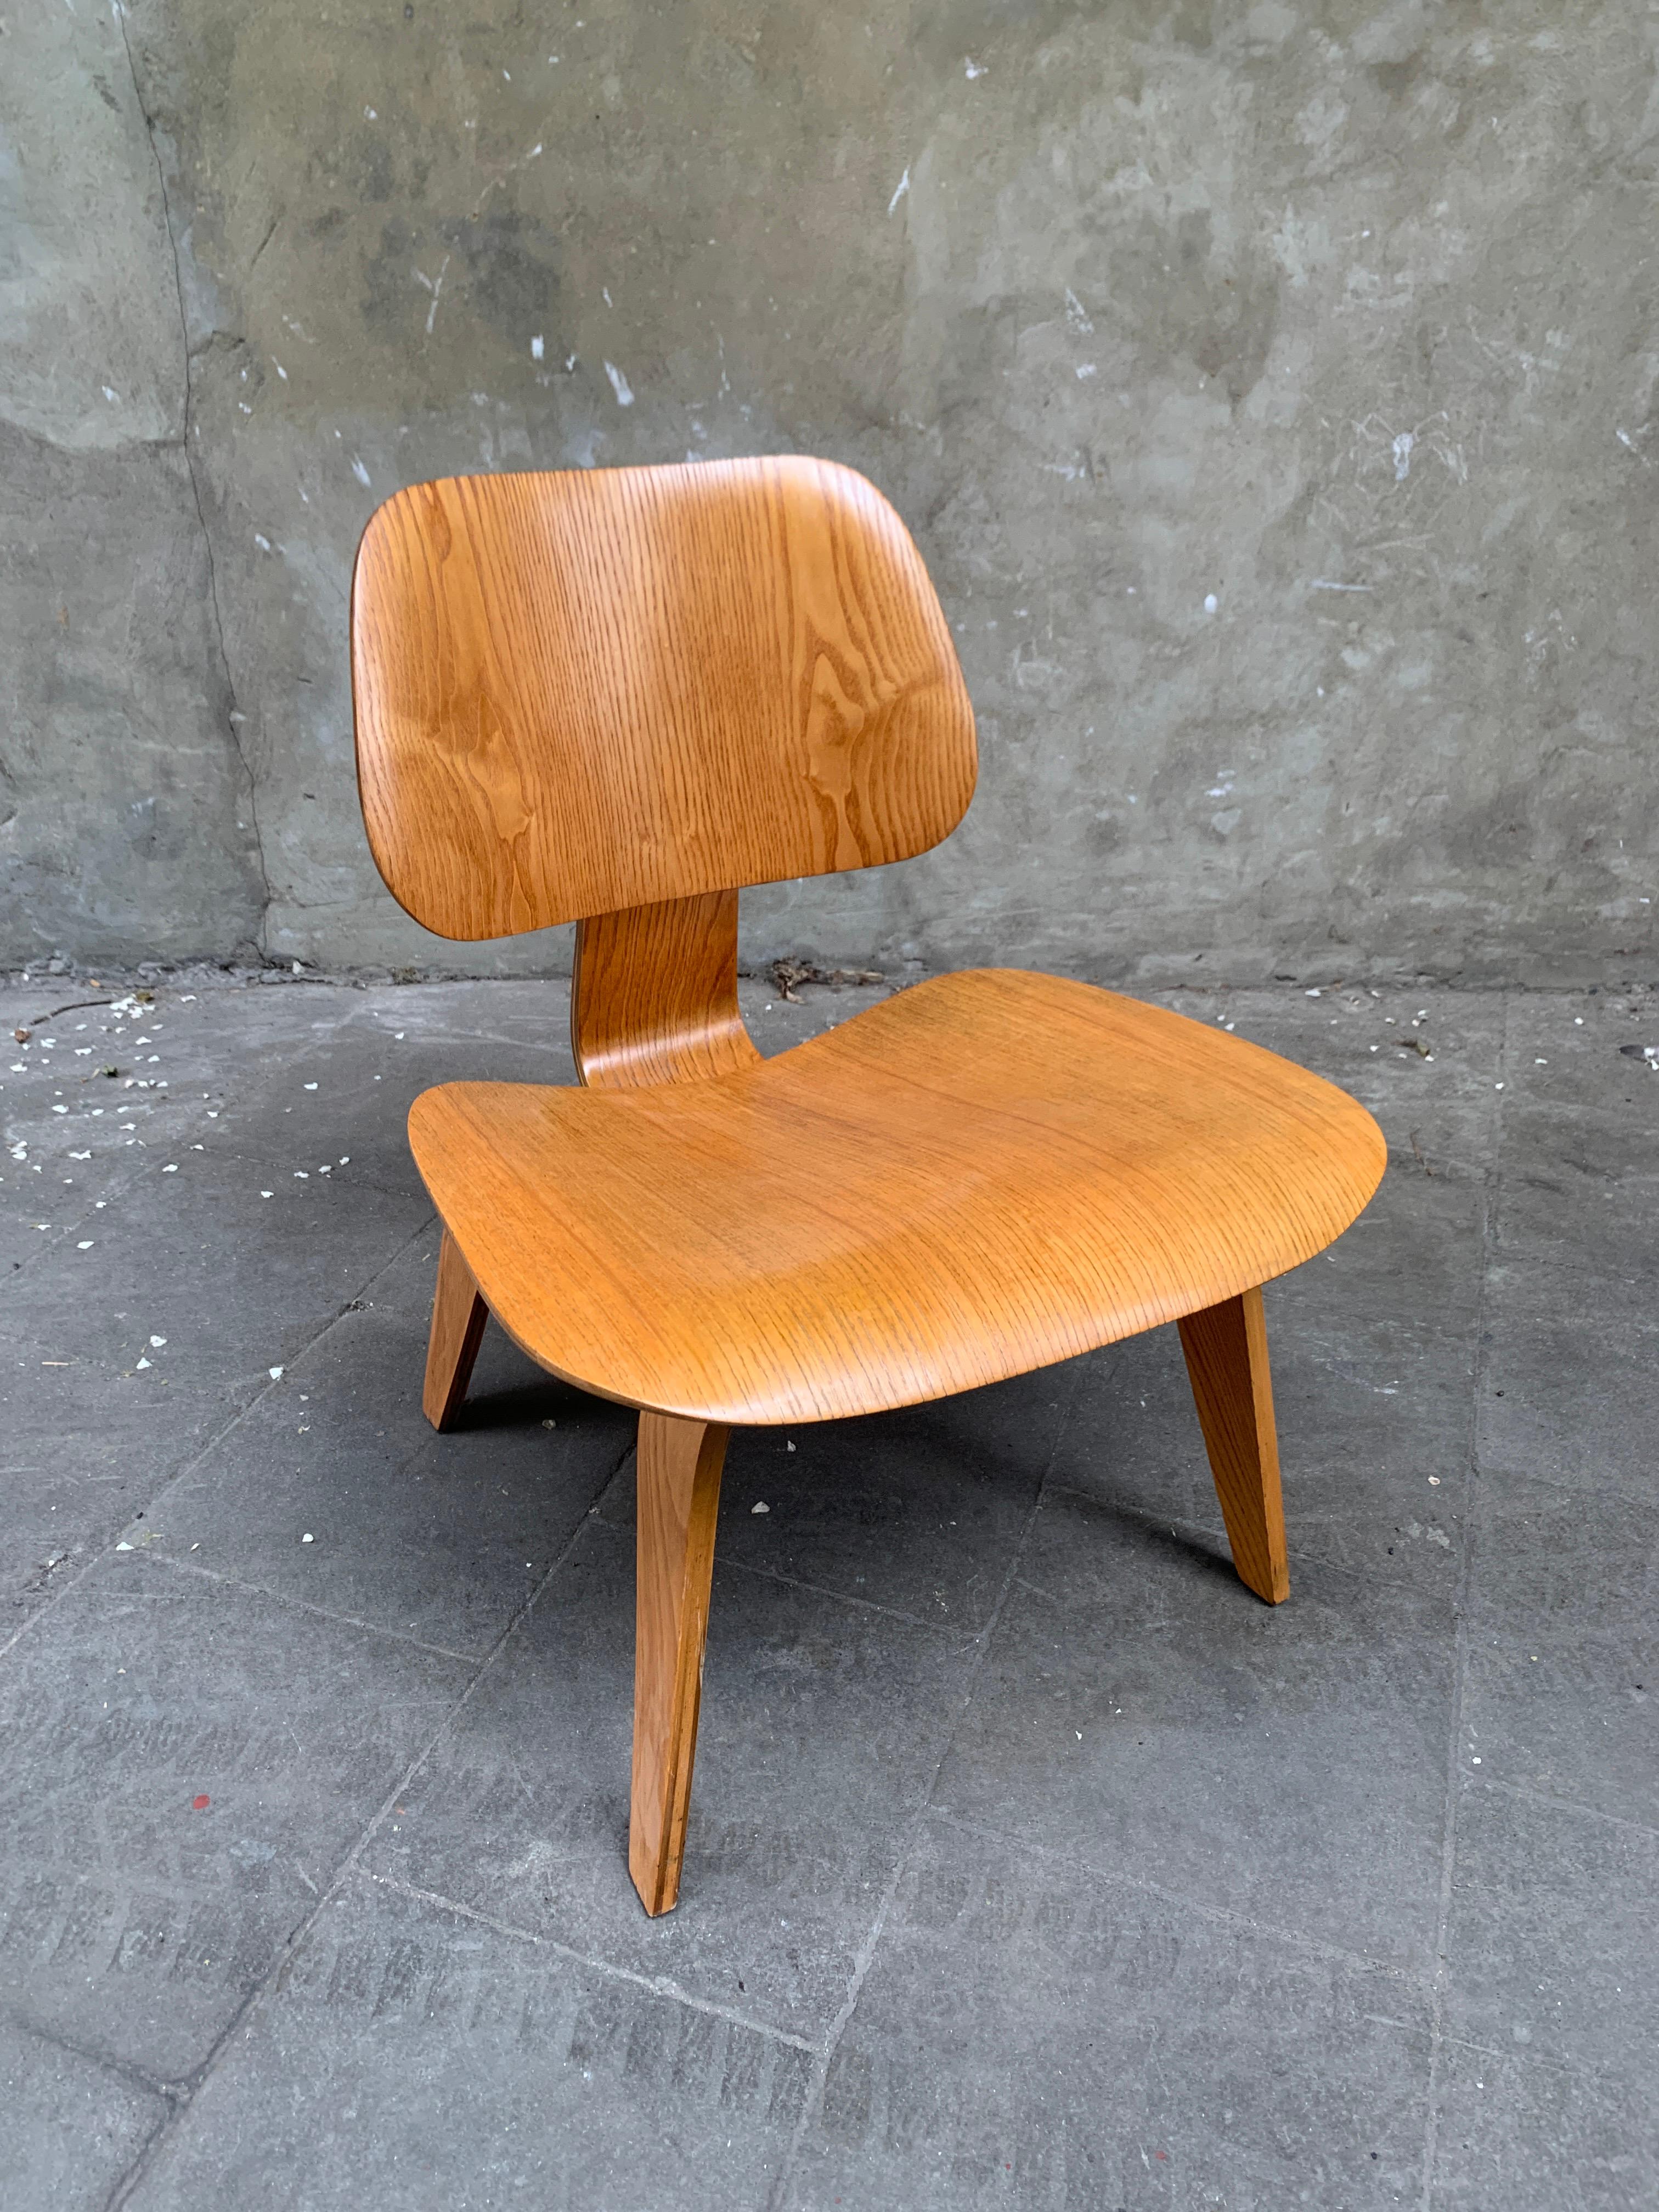 Chaise LCW (Lounge Chair Wood) créée par Charles et Ray Eames vers 1945.

Chaise vendue par Herman Miller, mais produite par Evans Plywood en 1948-1949. La disposition des vis 5-2-5 ci-dessous n'a été utilisée que par Evans Products. Lorsque Herman